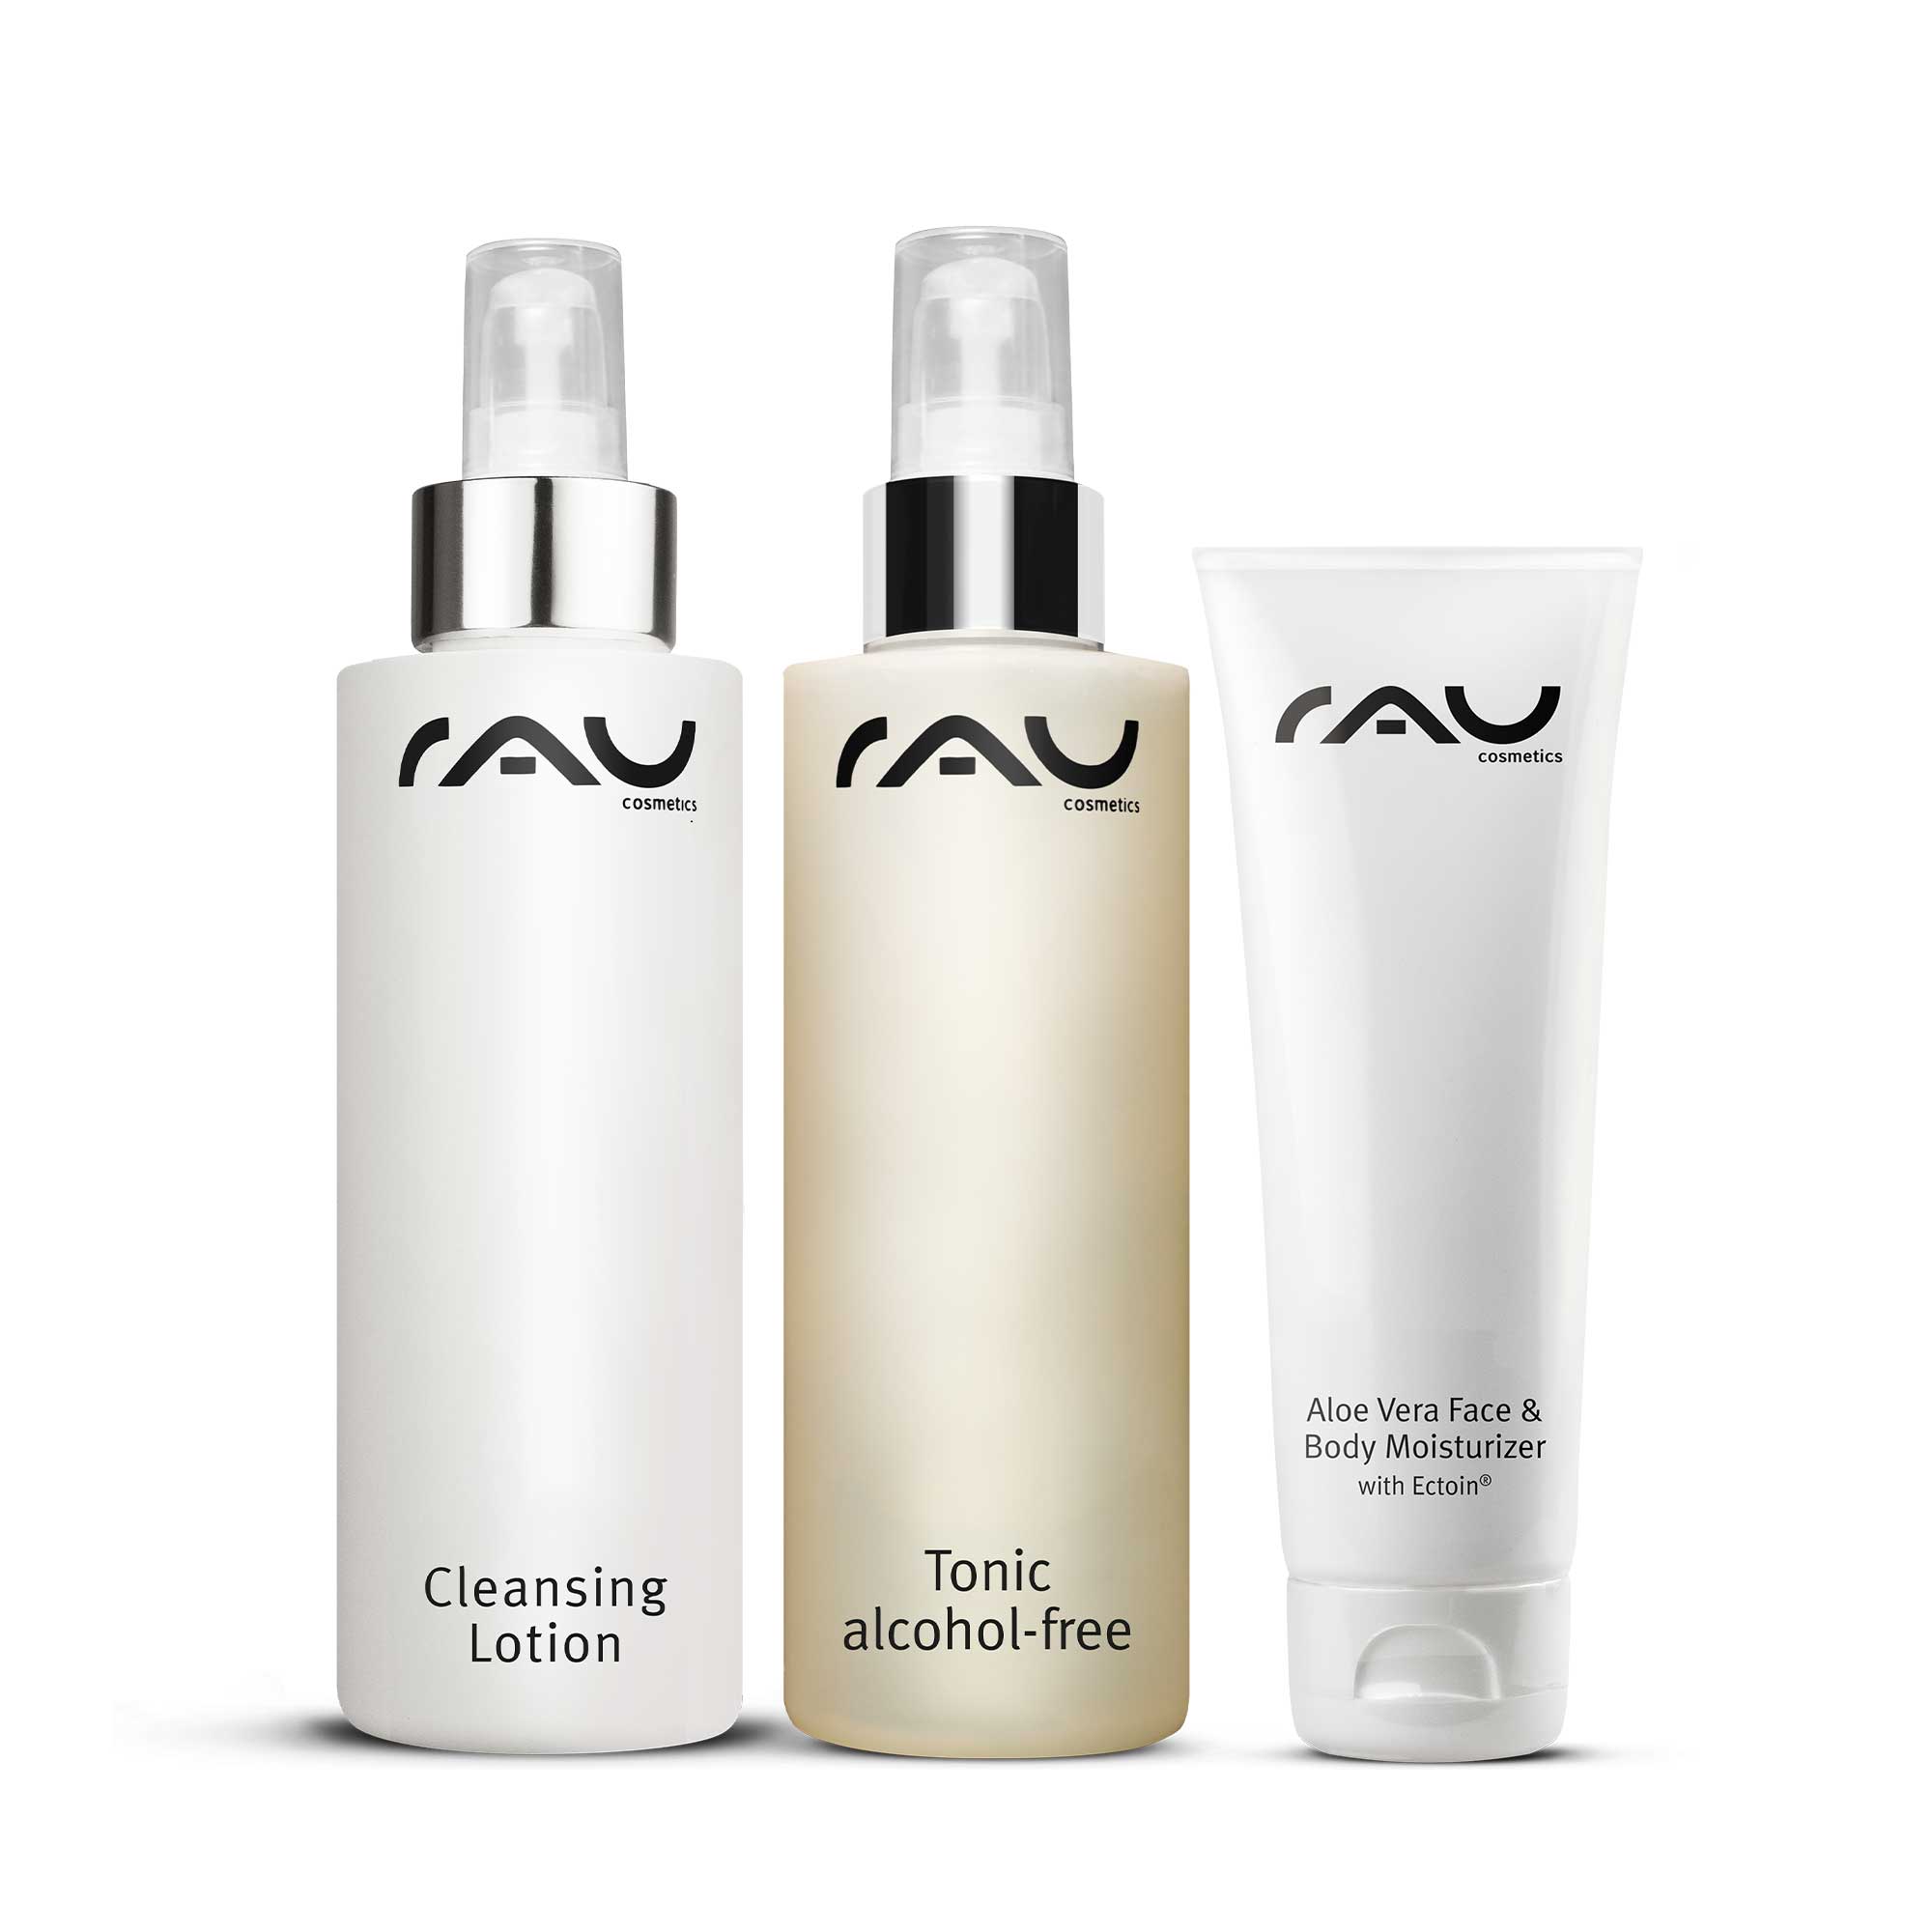 RAU Cosmetics Mischhaut Pflege Set T Zone Hautpflege Gesichtspflege fettige und trockene Hautstellen Gesichtsreinigung Kosmetik Onlineshop